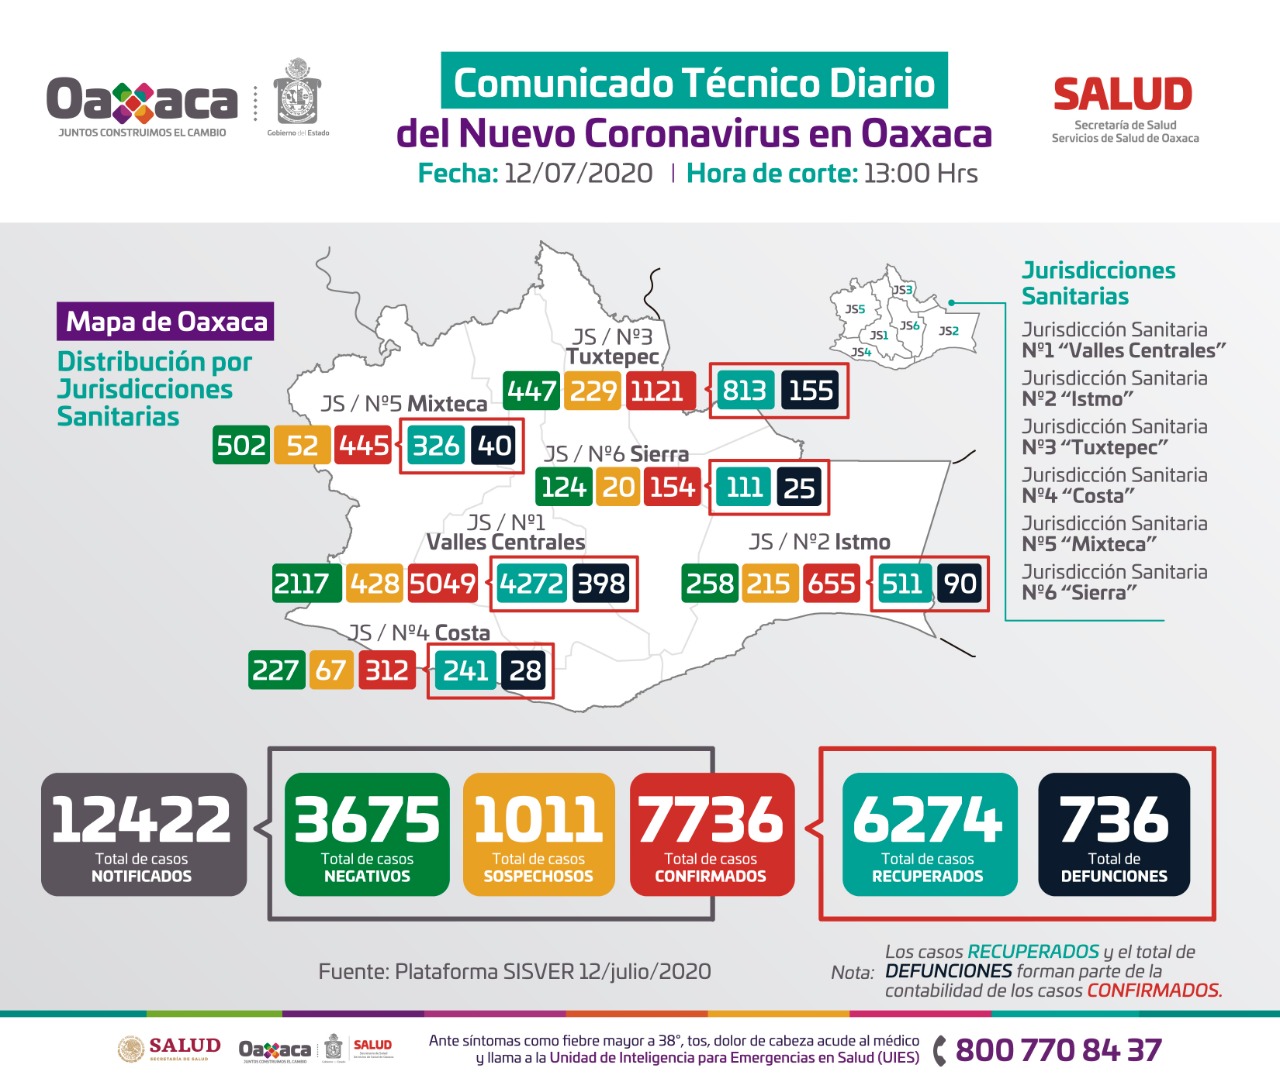 Cierra Oaxaca la semana con siete mil 736 casos acumulados de Covid-19